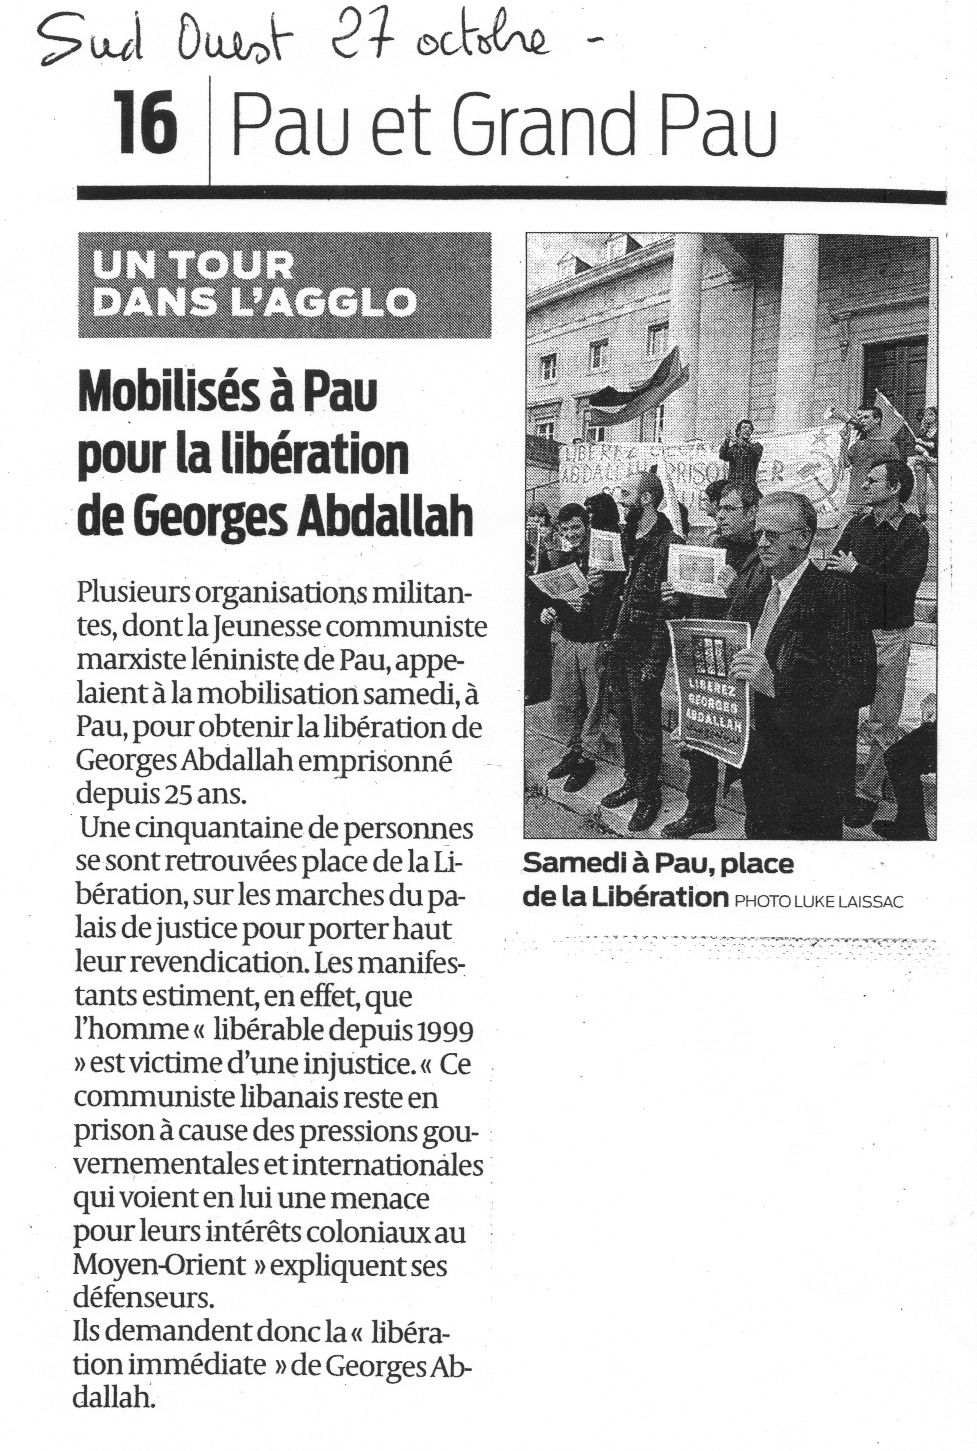 Sud Ouest - Manifestation pour Georges Abdallah